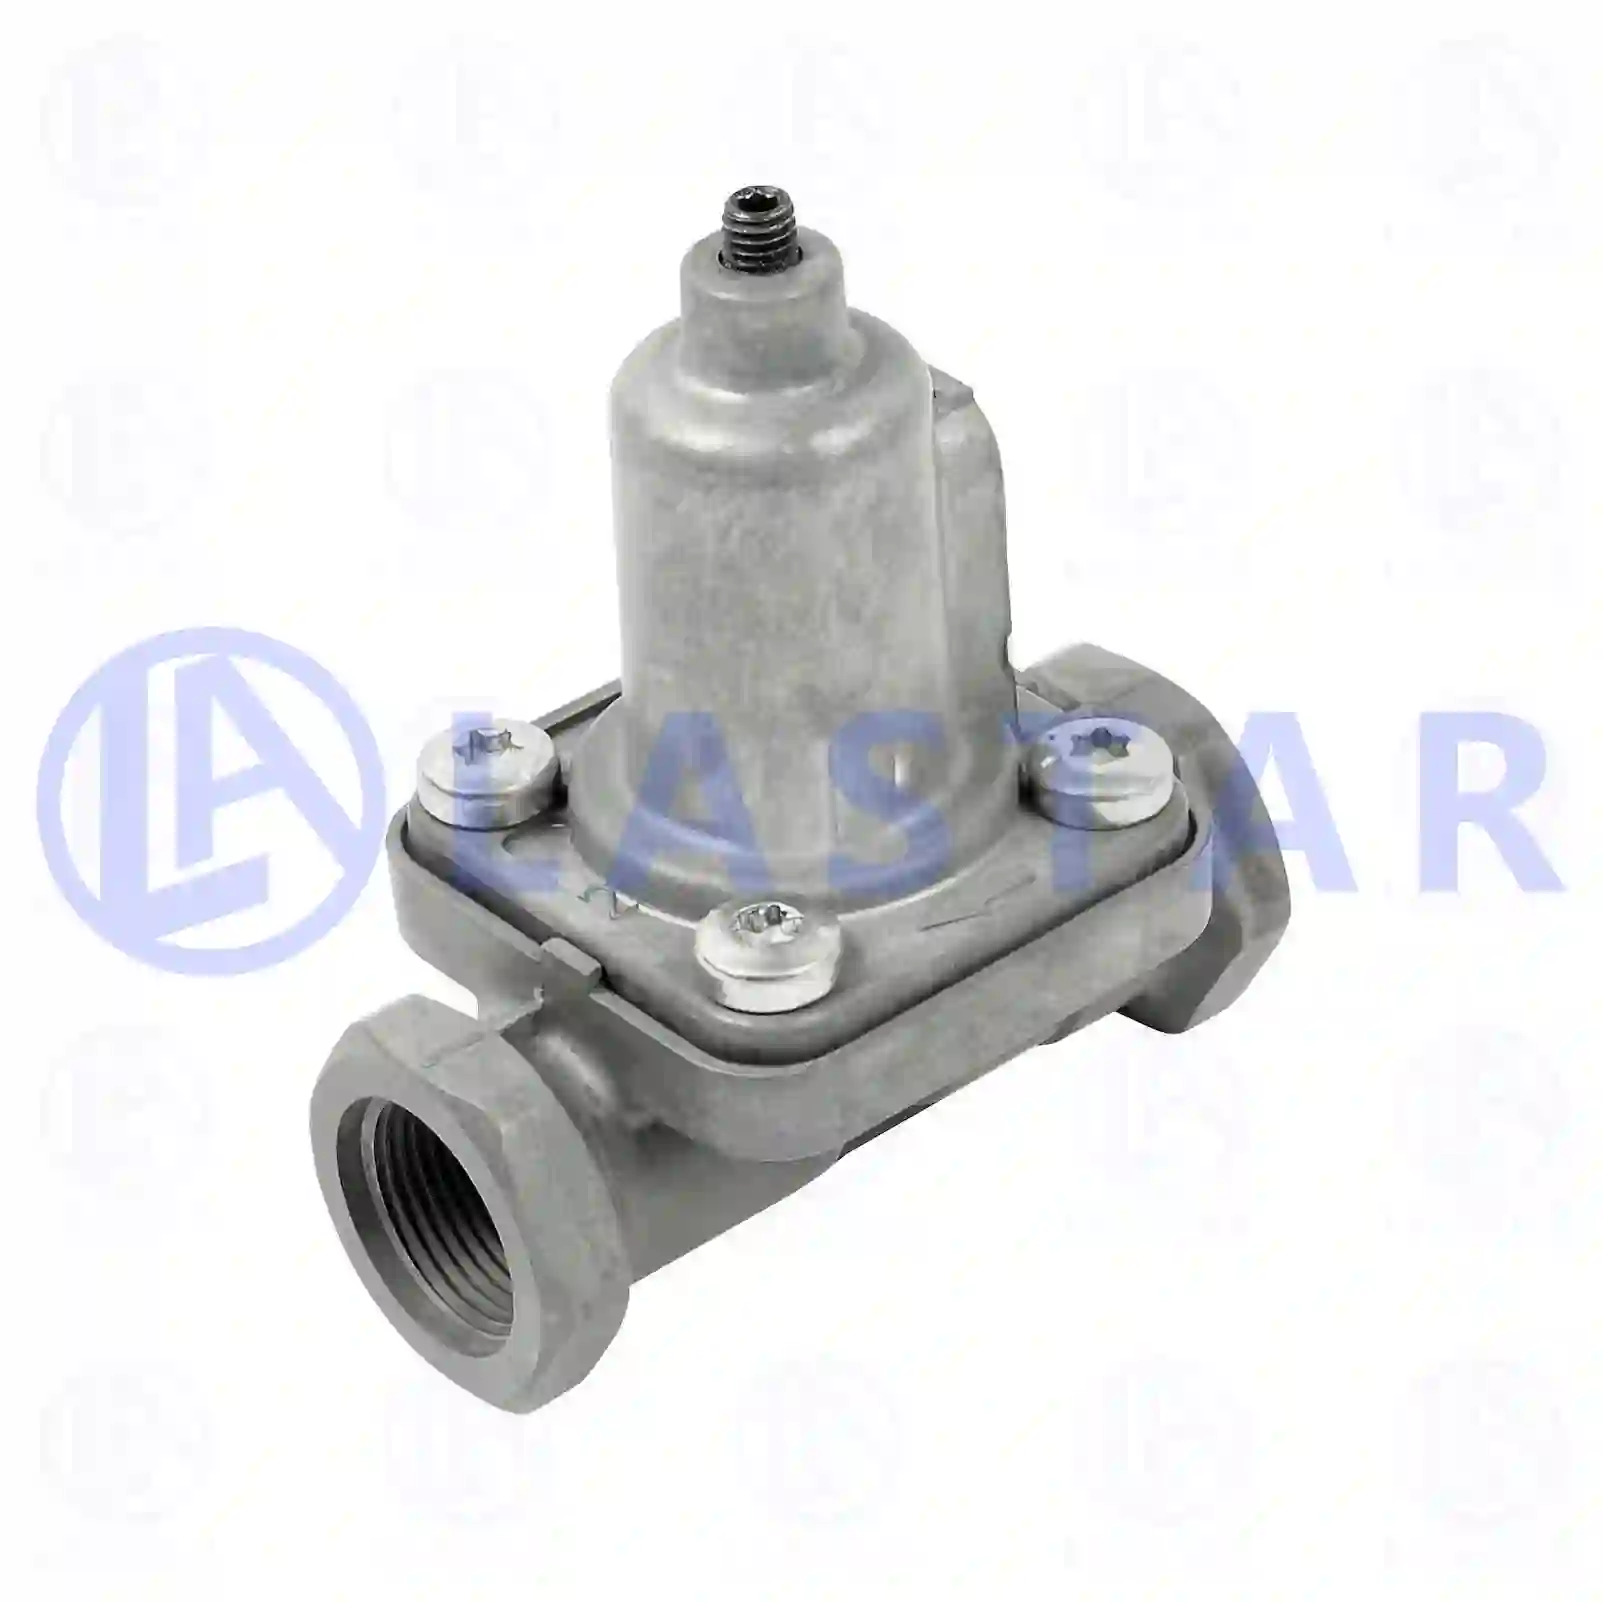 Oil Pump Overflow valve, la no: 77701585 ,  oem no:0054296344, , Lastar Spare Part | Truck Spare Parts, Auotomotive Spare Parts